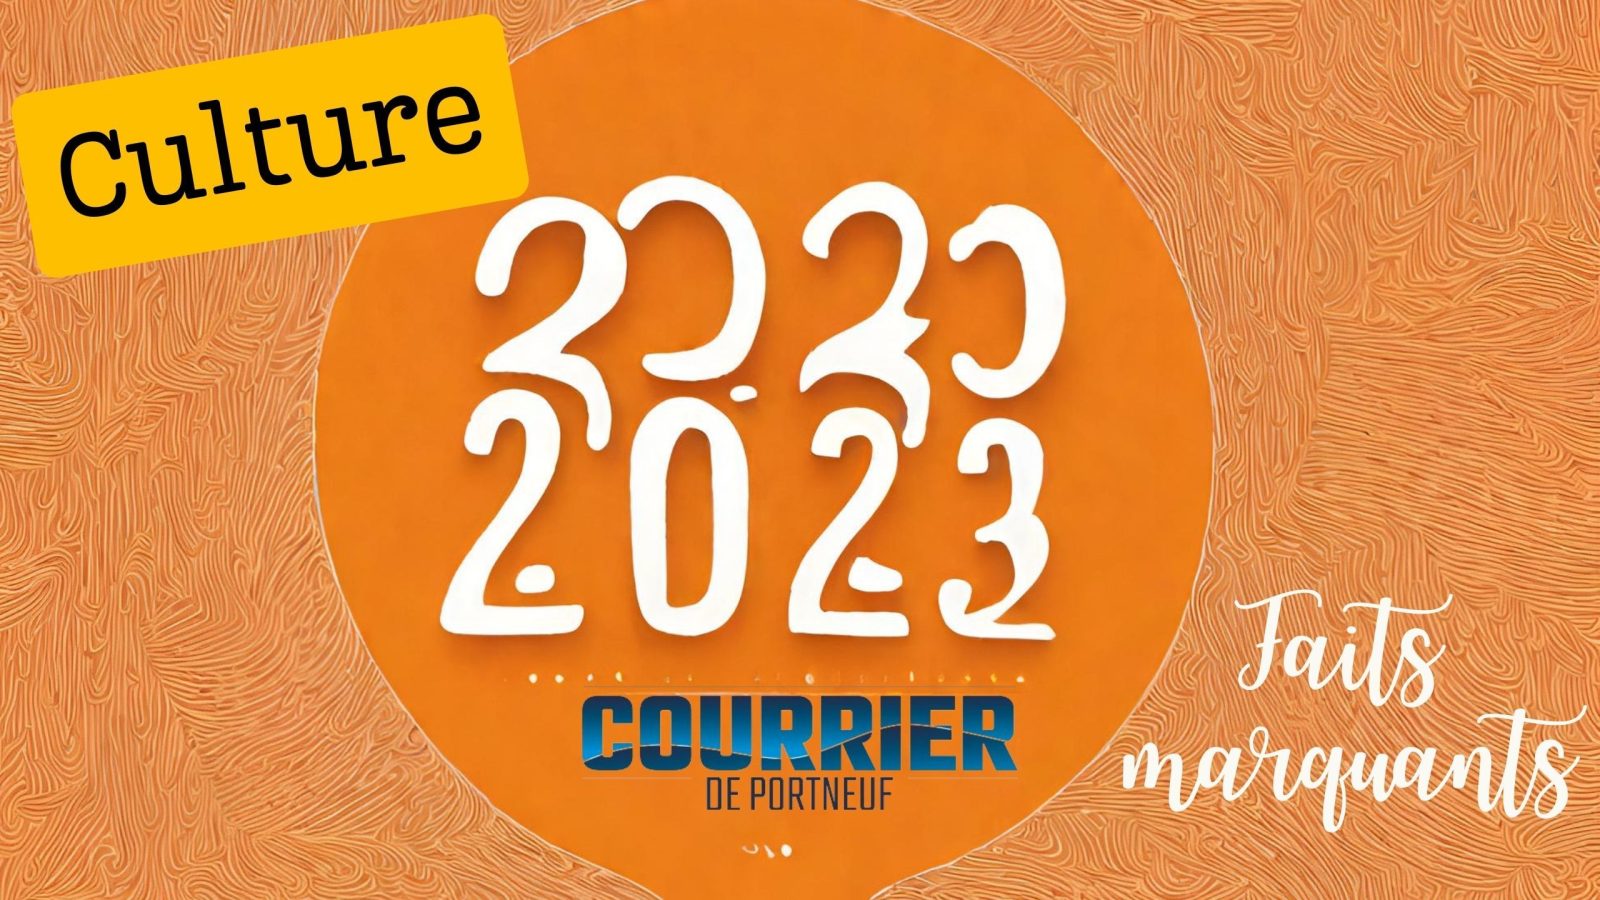 Ce qui a marqué l’actualité culturelle du <i>Courrier de Portneuf</i> en 2023